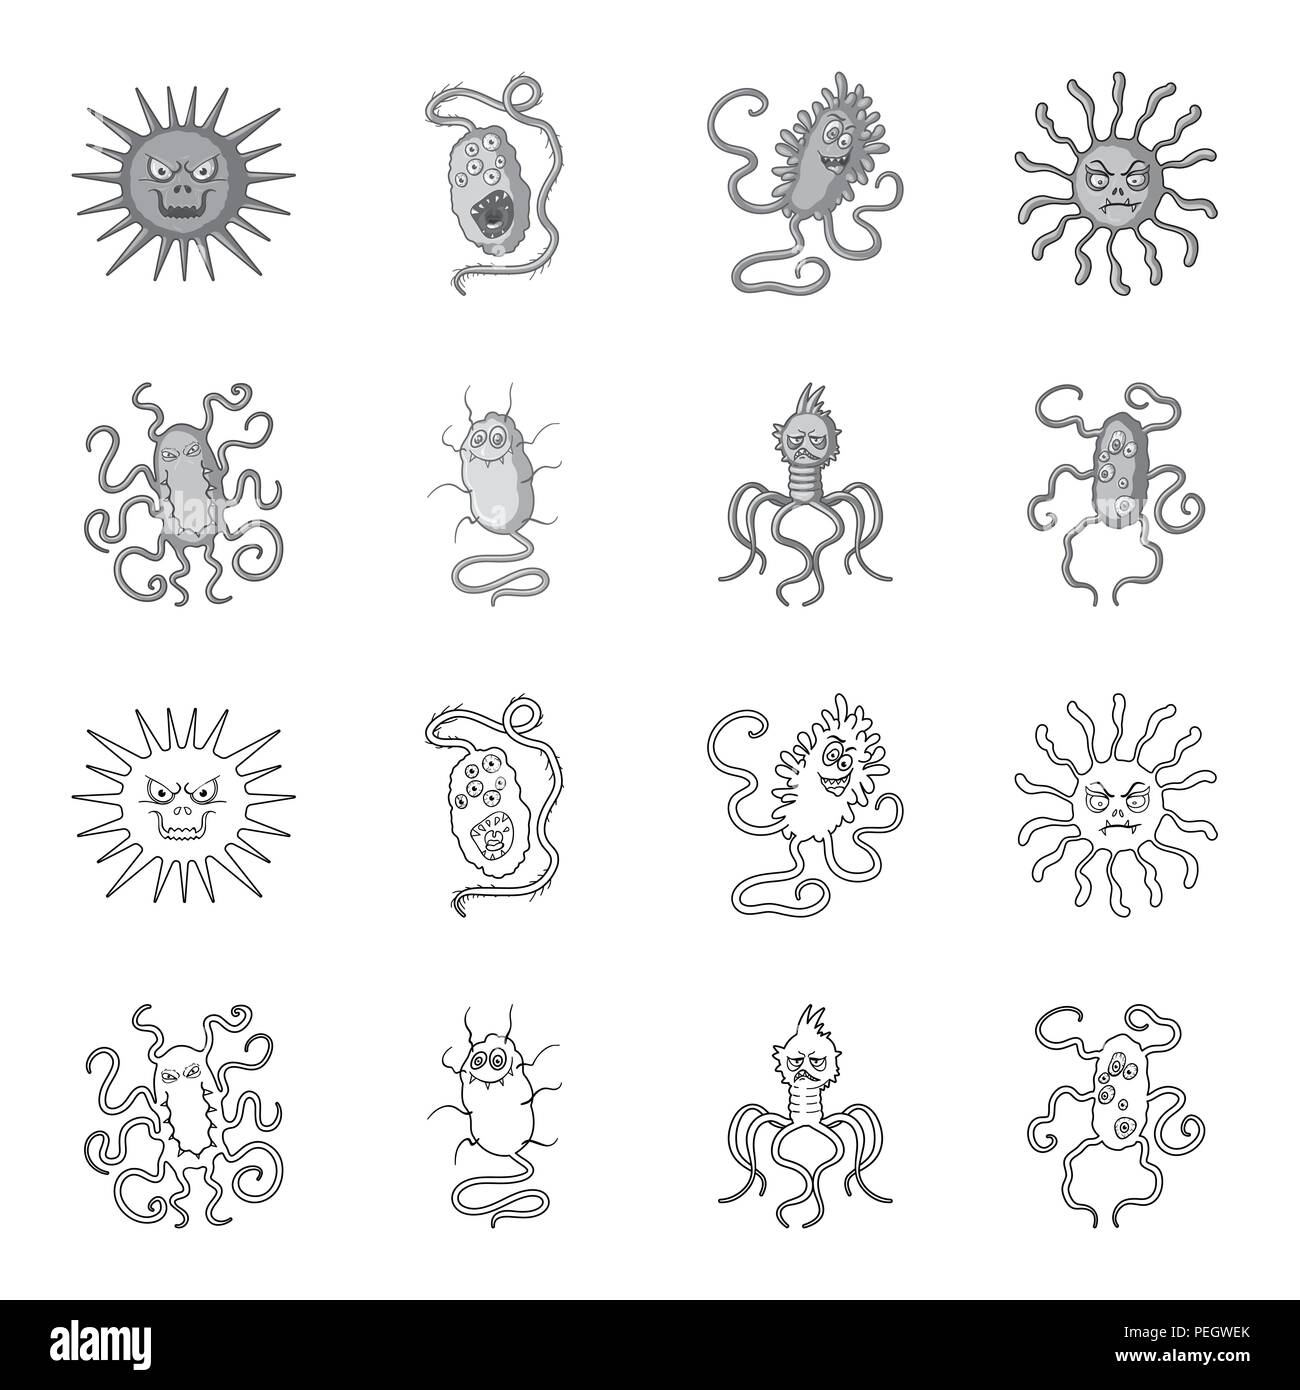 Verschiedene Arten Von Mikroben Und Viren Viren Und Bakterien Sammlung Icons In Grenzen Gesetzt Schwarzweiss Stil Vektor Symbol Lieferbar Abbildung Stock Vektorgrafik Alamy